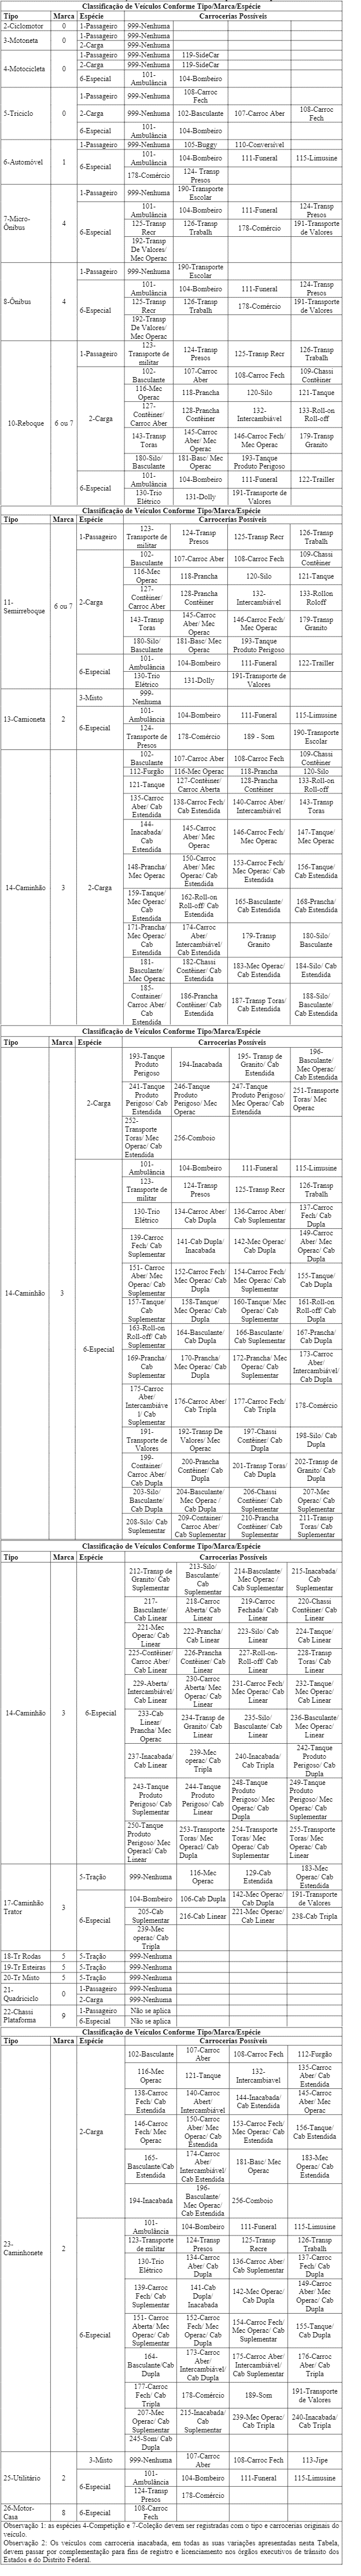 Ilustração referente a Tabela I-Classificação de Veículos Conforme Tipo/Marca/Espécie.